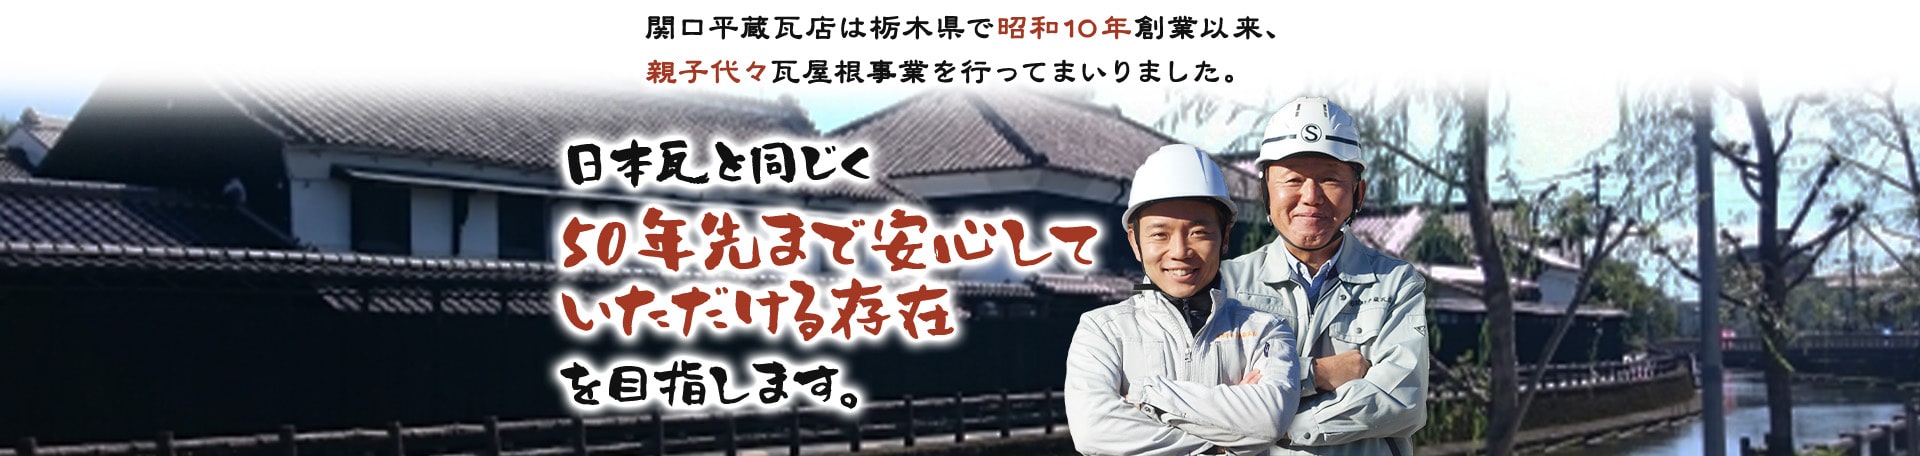 関口平蔵瓦店は栃木県で昭和10年創業以来、親子代々瓦屋根事業を行ってまいりました。日本瓦と同じく50年先まで安心していただける存在を目指します。